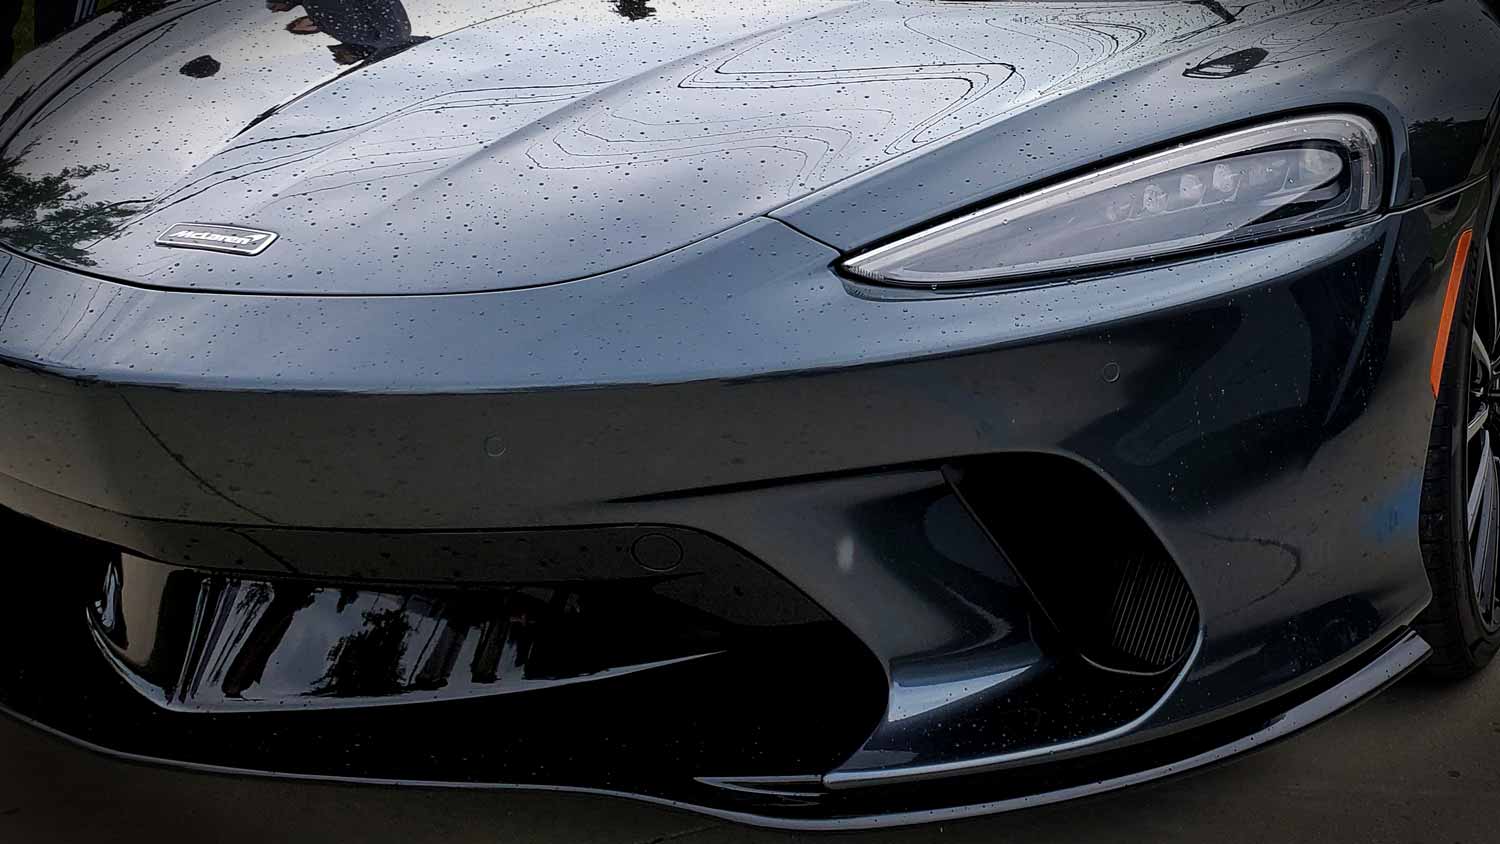 McLaren at Motor Werks Cars & Coffee 2021.